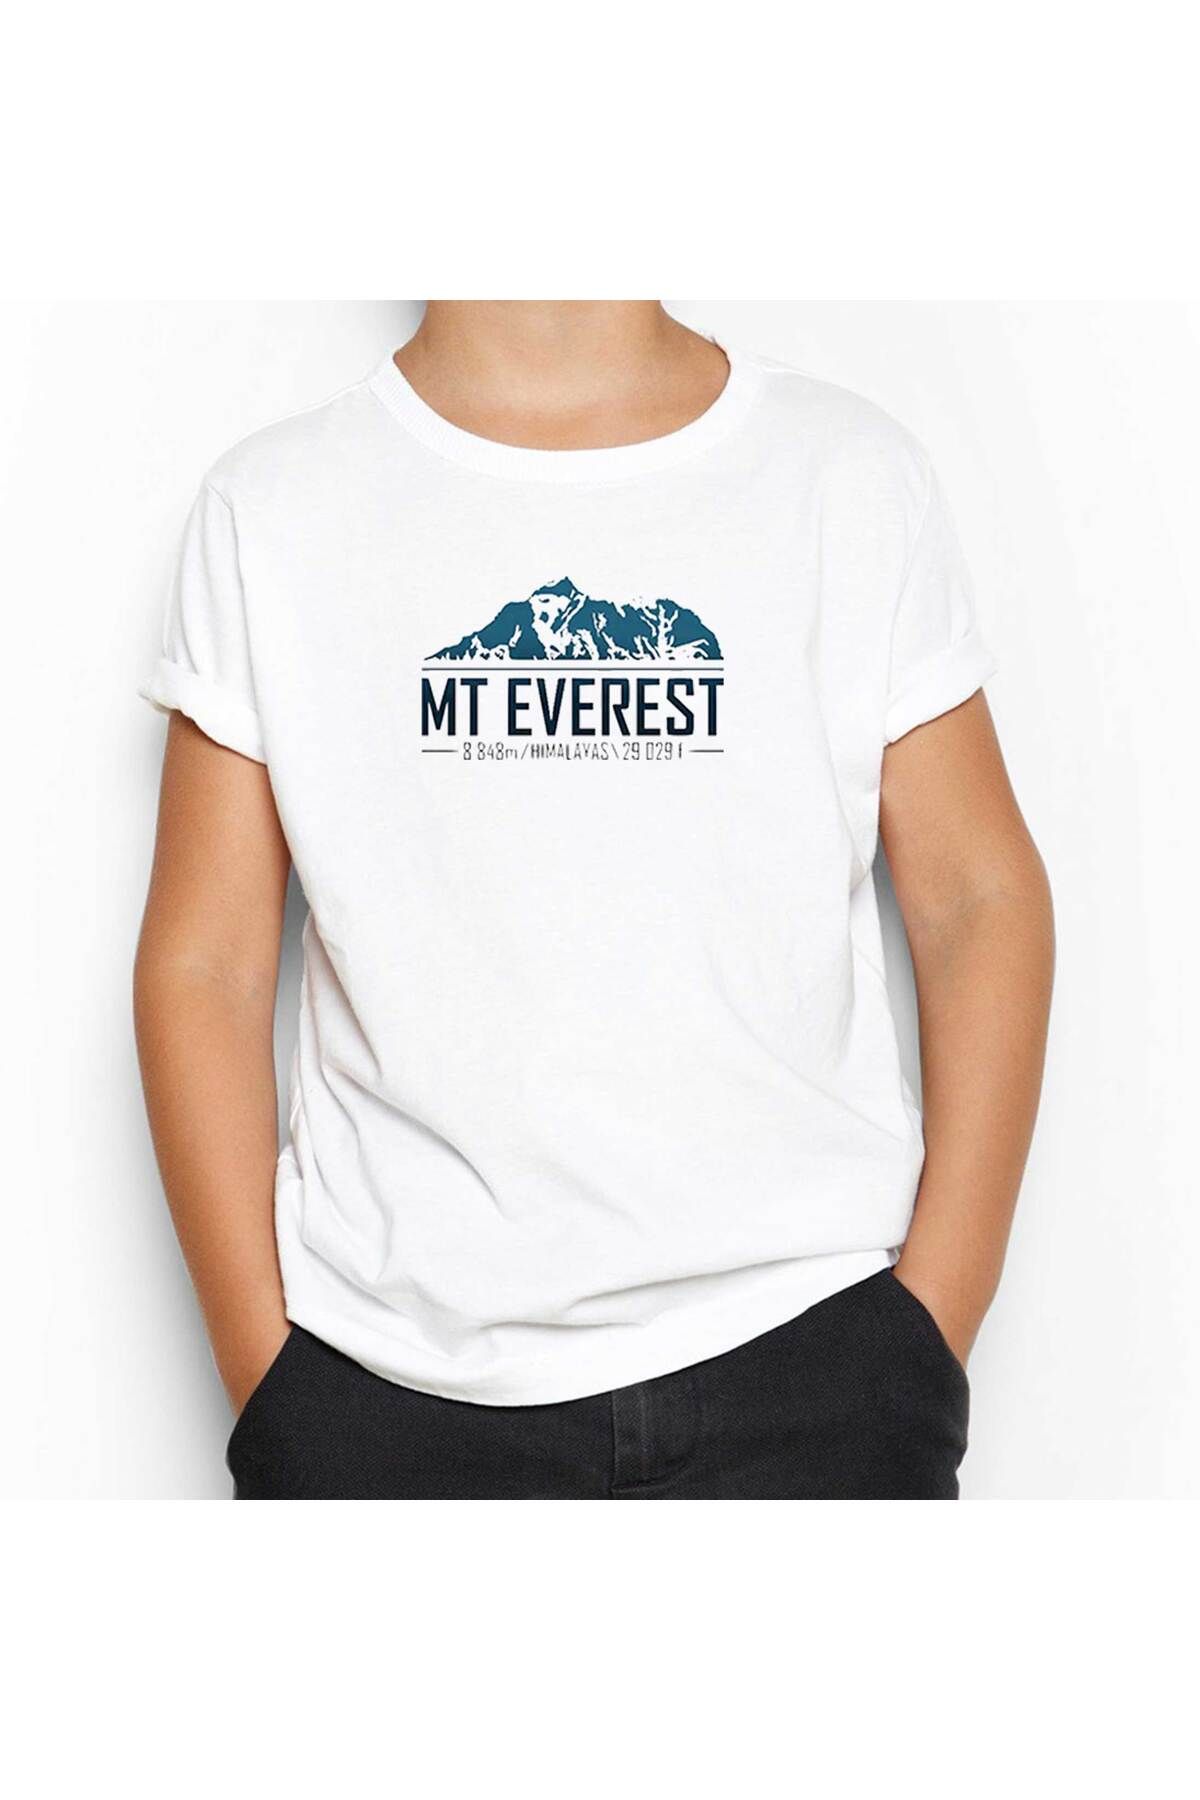 Genel Markalar Everest 8848 m Beyaz Çocuk Tişört 13-14 Yaş